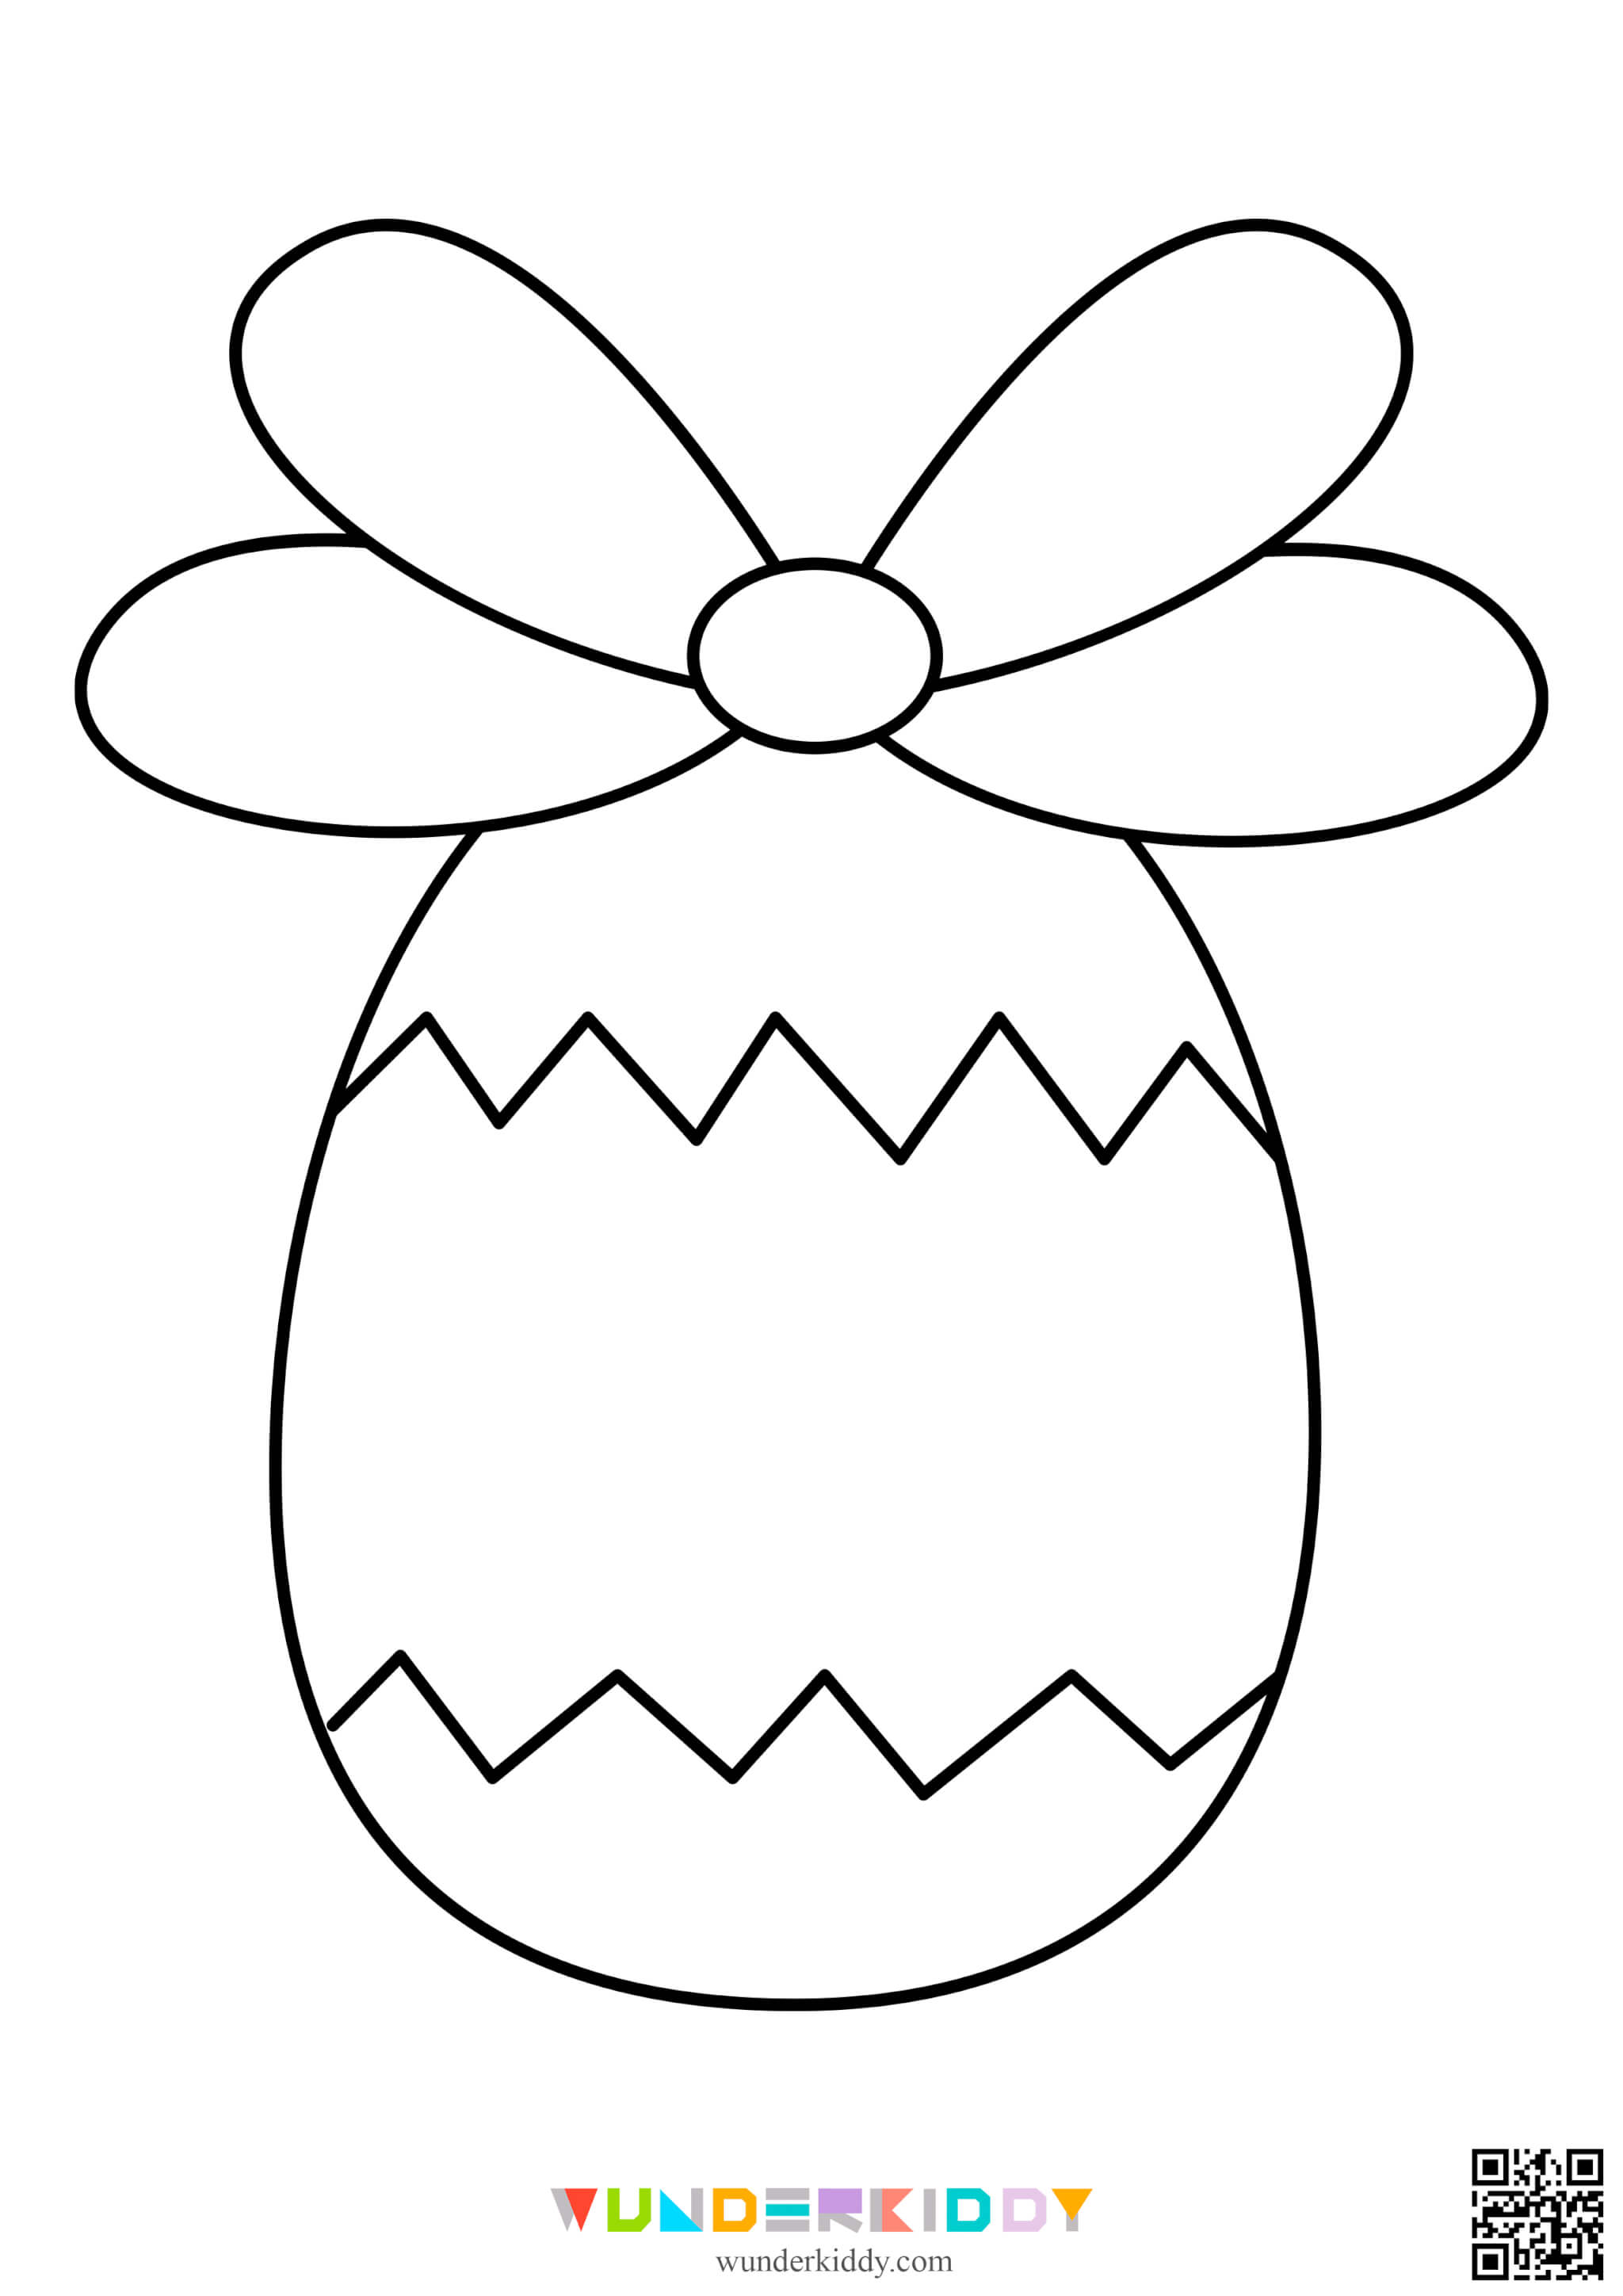 Розмальовки «Великодні яйця» для дітей - Зображення 7